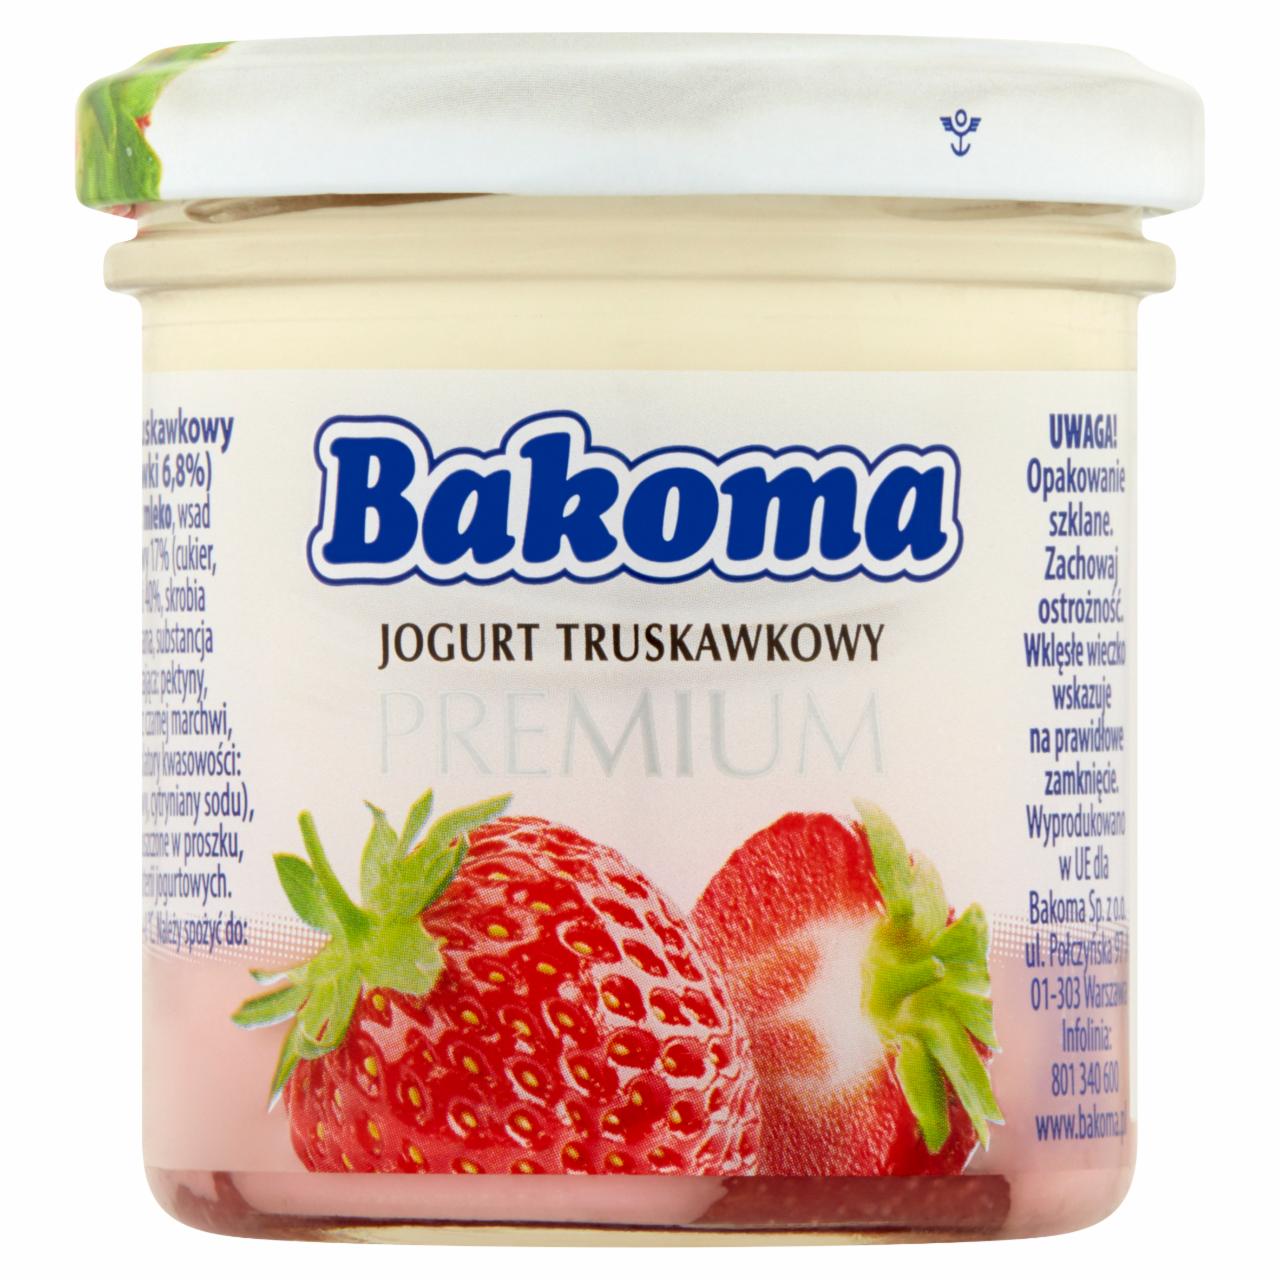 Zdjęcia - Bakoma Premium Jogurt truskawkowy 150 g